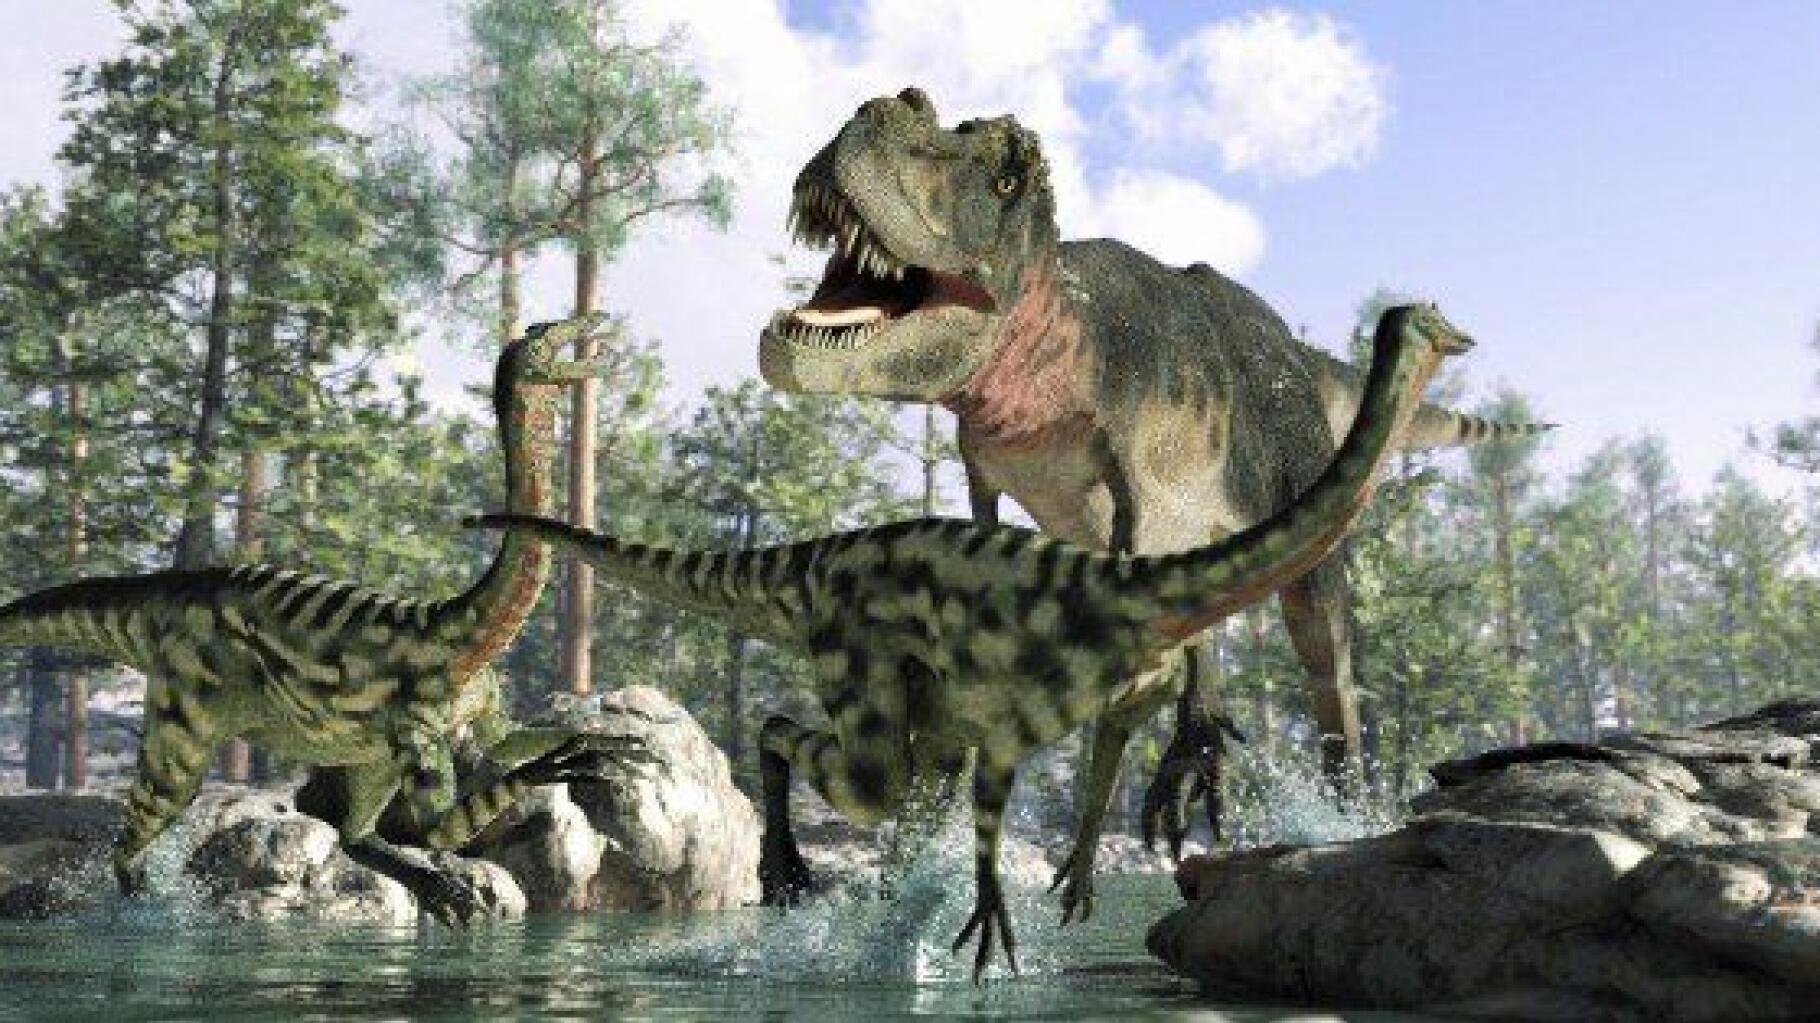 Les dinosaures étaient des animaux à sang tiède plutôt qu'à sang froid  selon une étude américaine